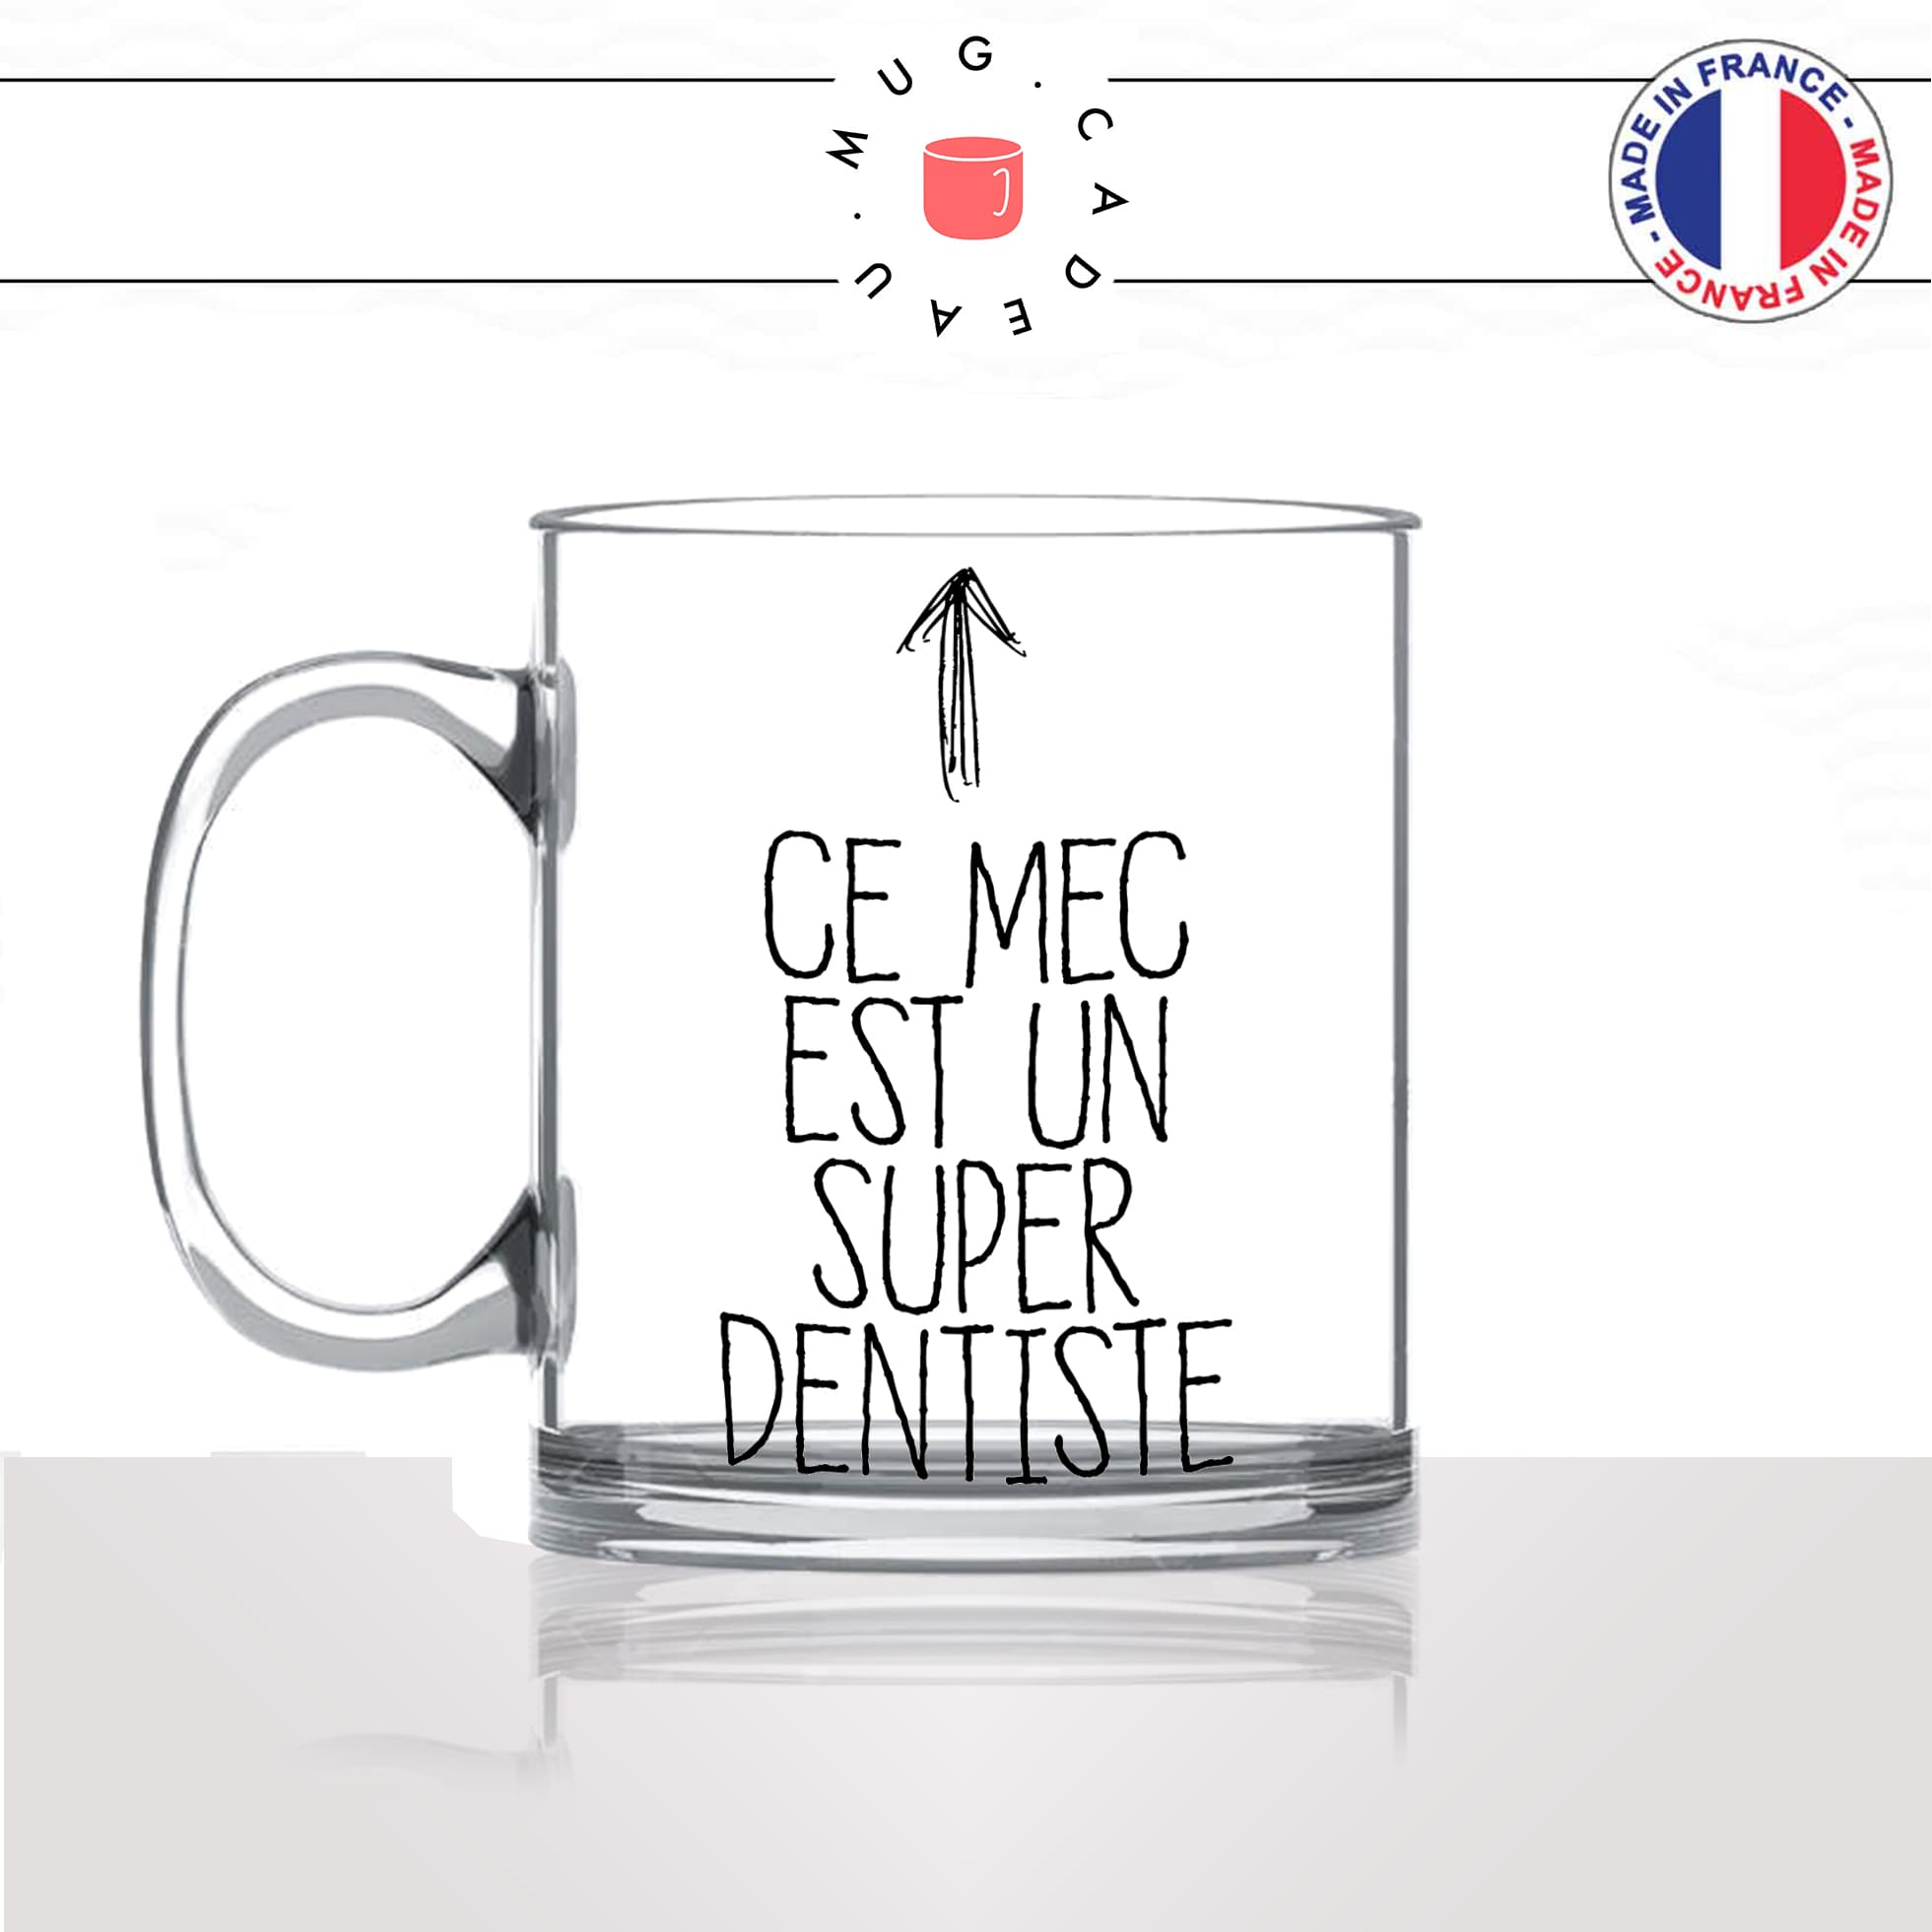 mug-tasse-en-verre-transparent-glass-meilleur-ce-mec-est-un-super-dentiste-travail-medecin-dent-humour-métier-fun-café-thé-idée-cadeau-original